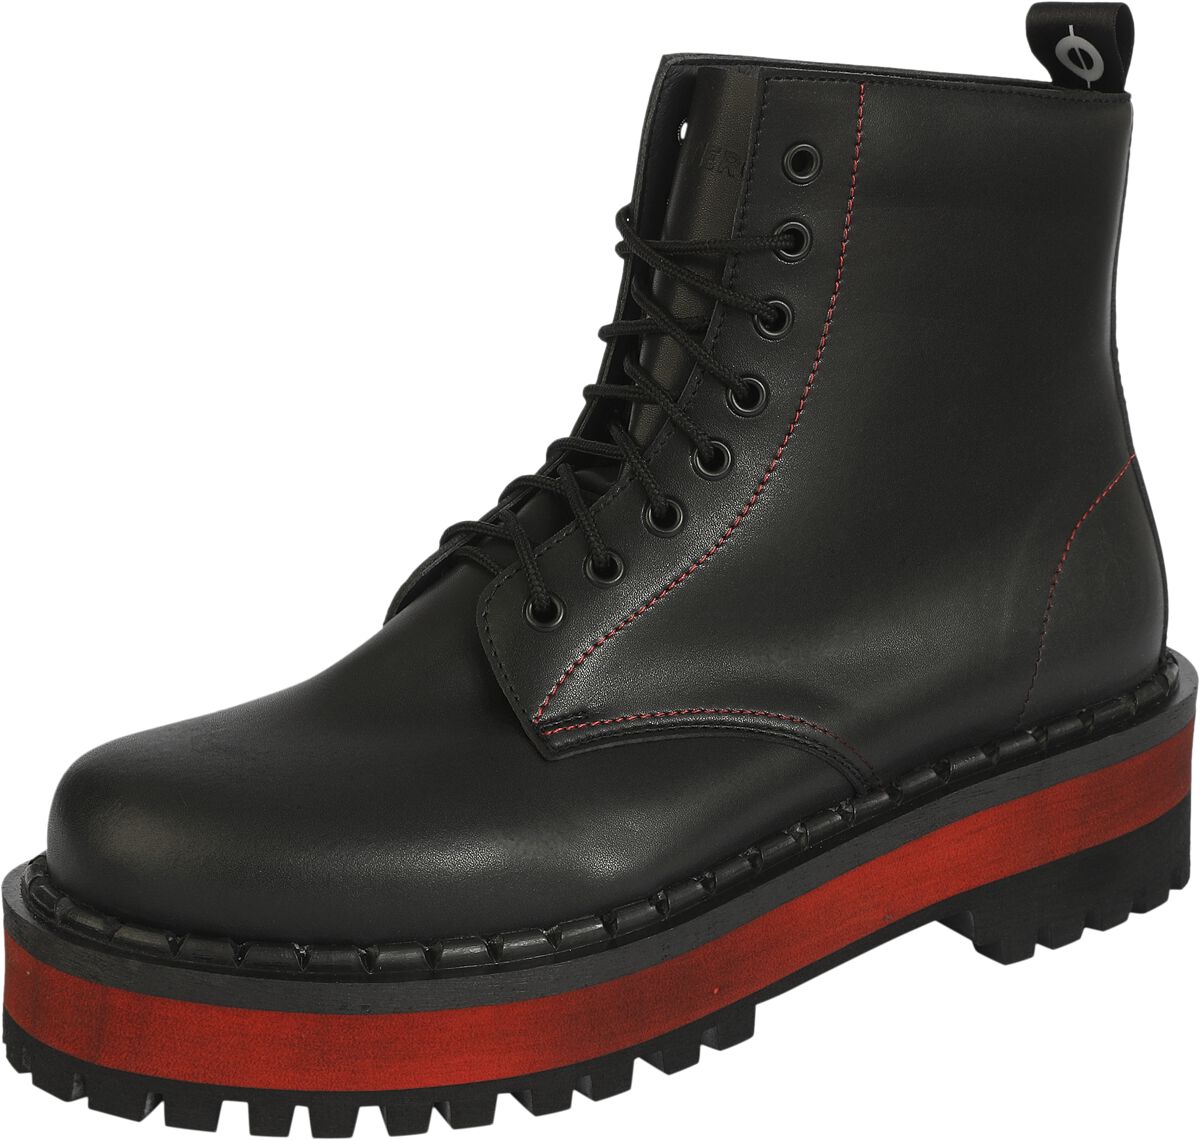 Altercore - Gothic Stiefel - 653 Vegan Black/Red - EU36 bis EU43 - Größe EU43 - schwarz/rot von Altercore